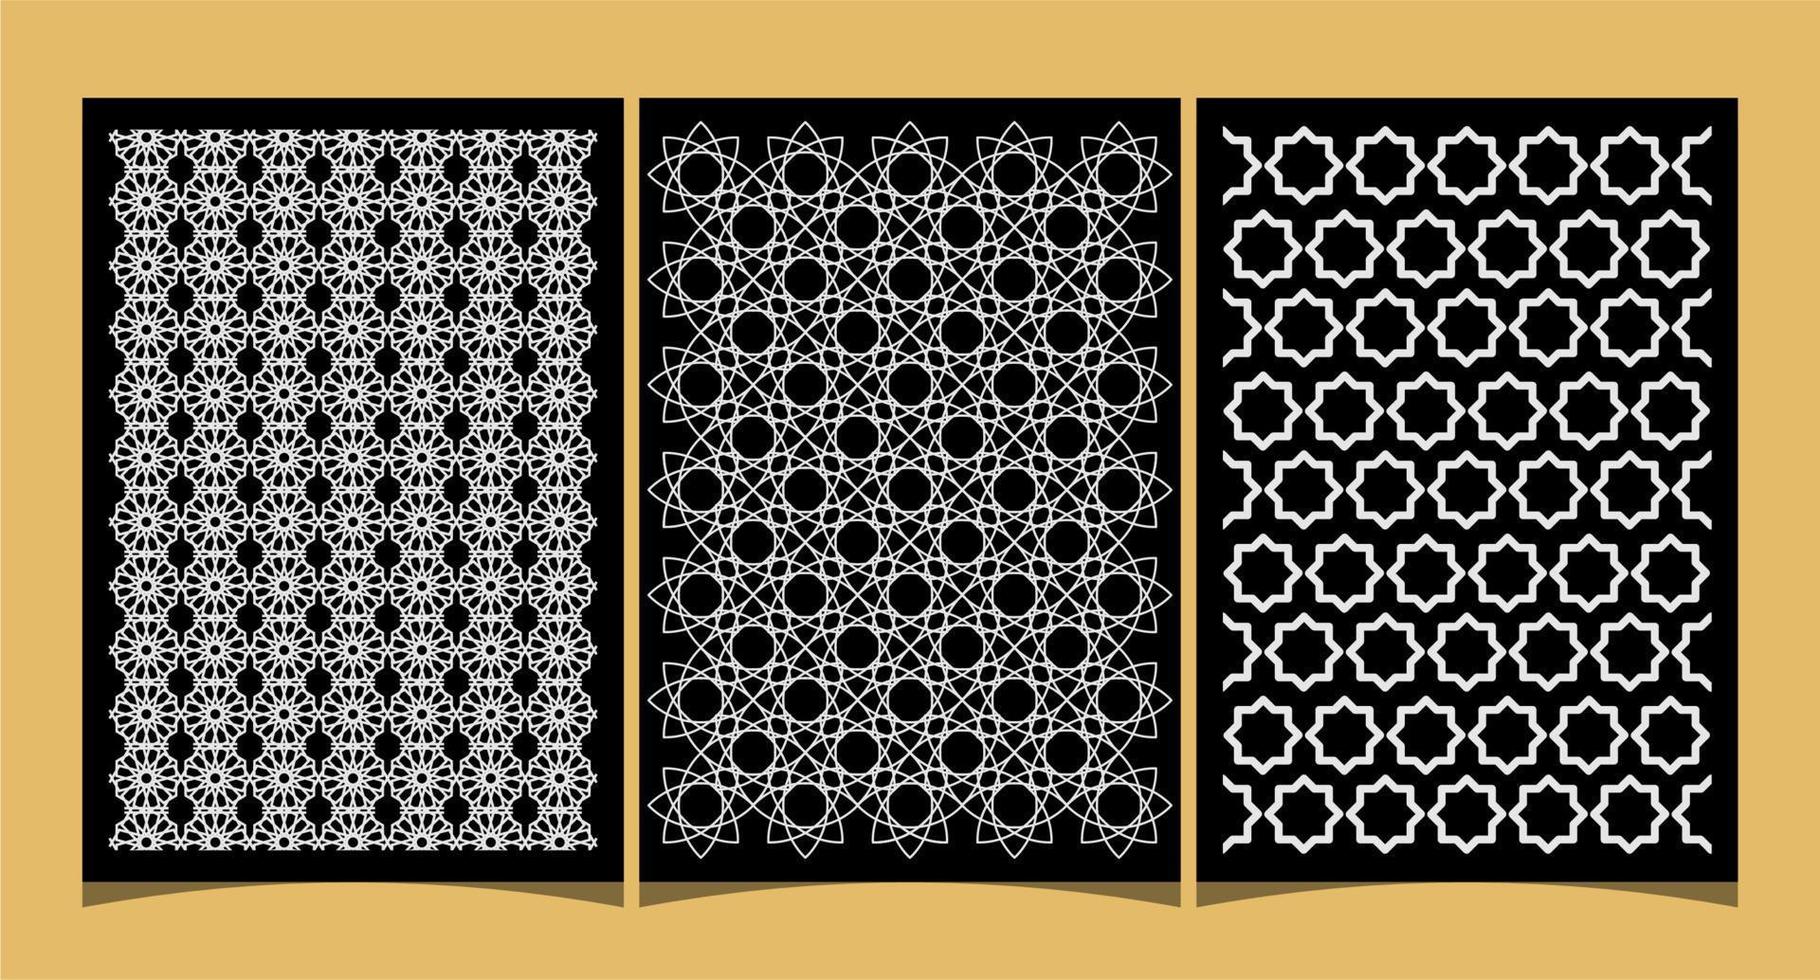 islamitische naadloze patroonset, voor ramadan of islamitische thema-achtergrondontwerpinspiratie vector